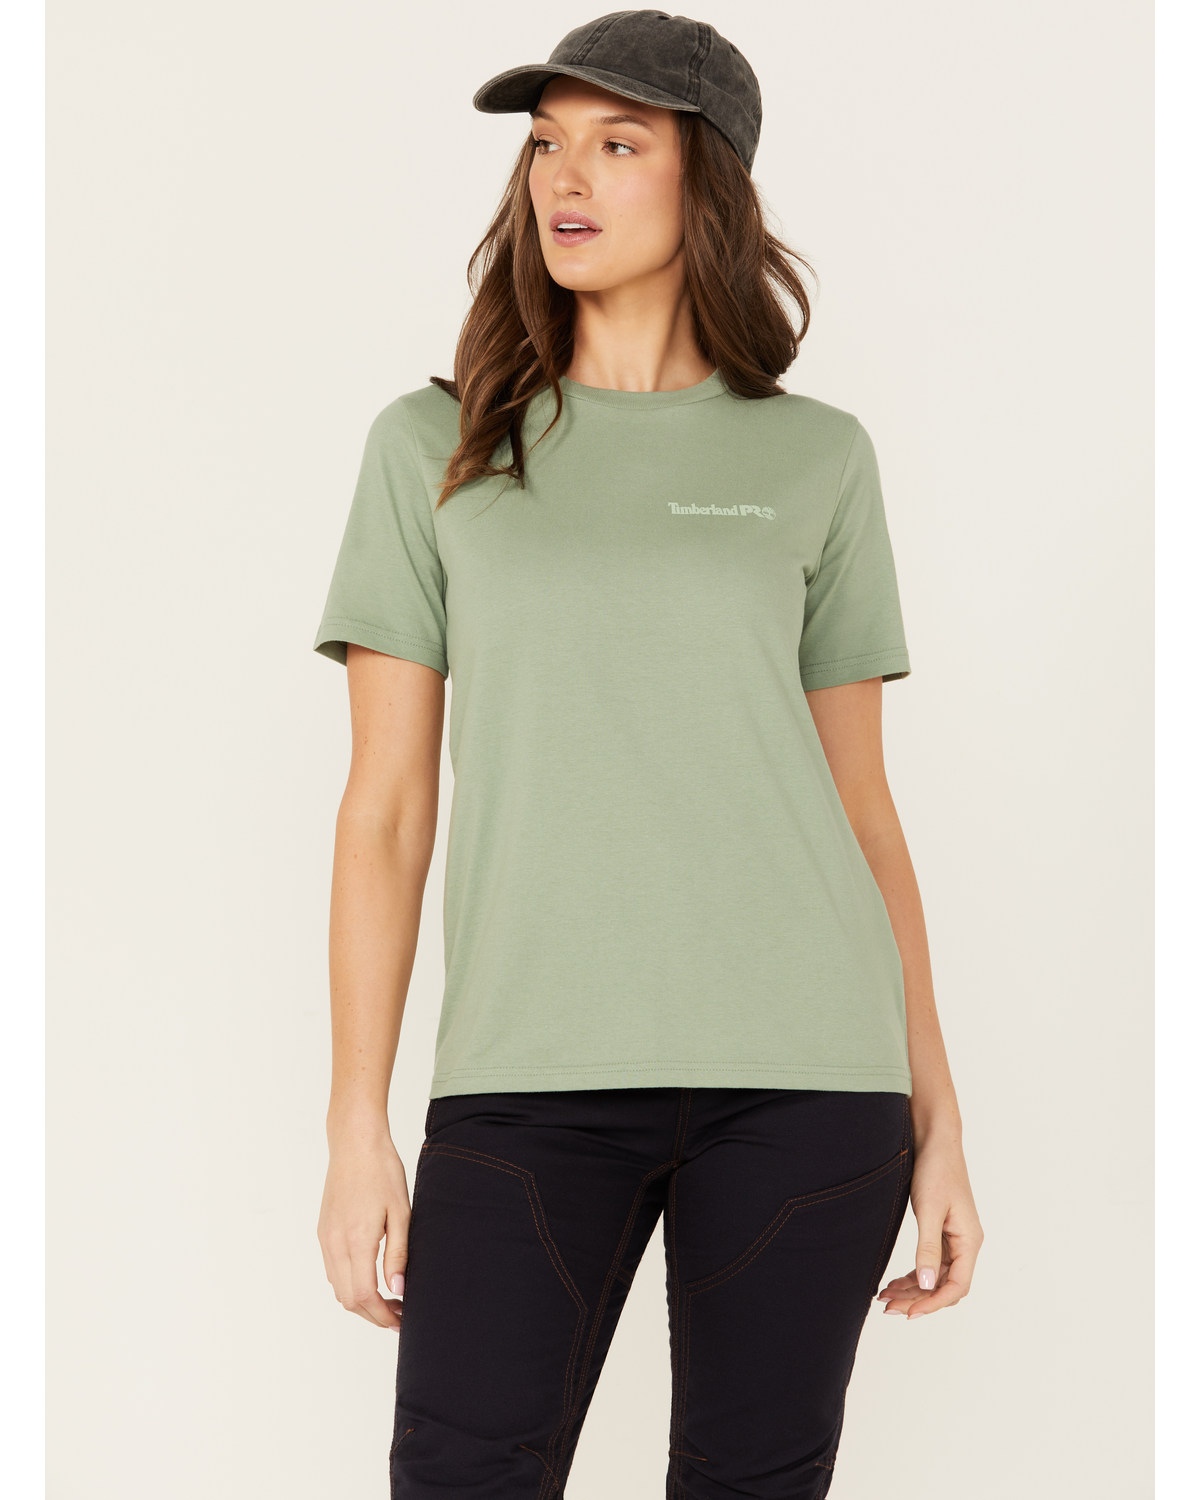 Timberland Women's Cotton Core Short Sleeve T-Shirt